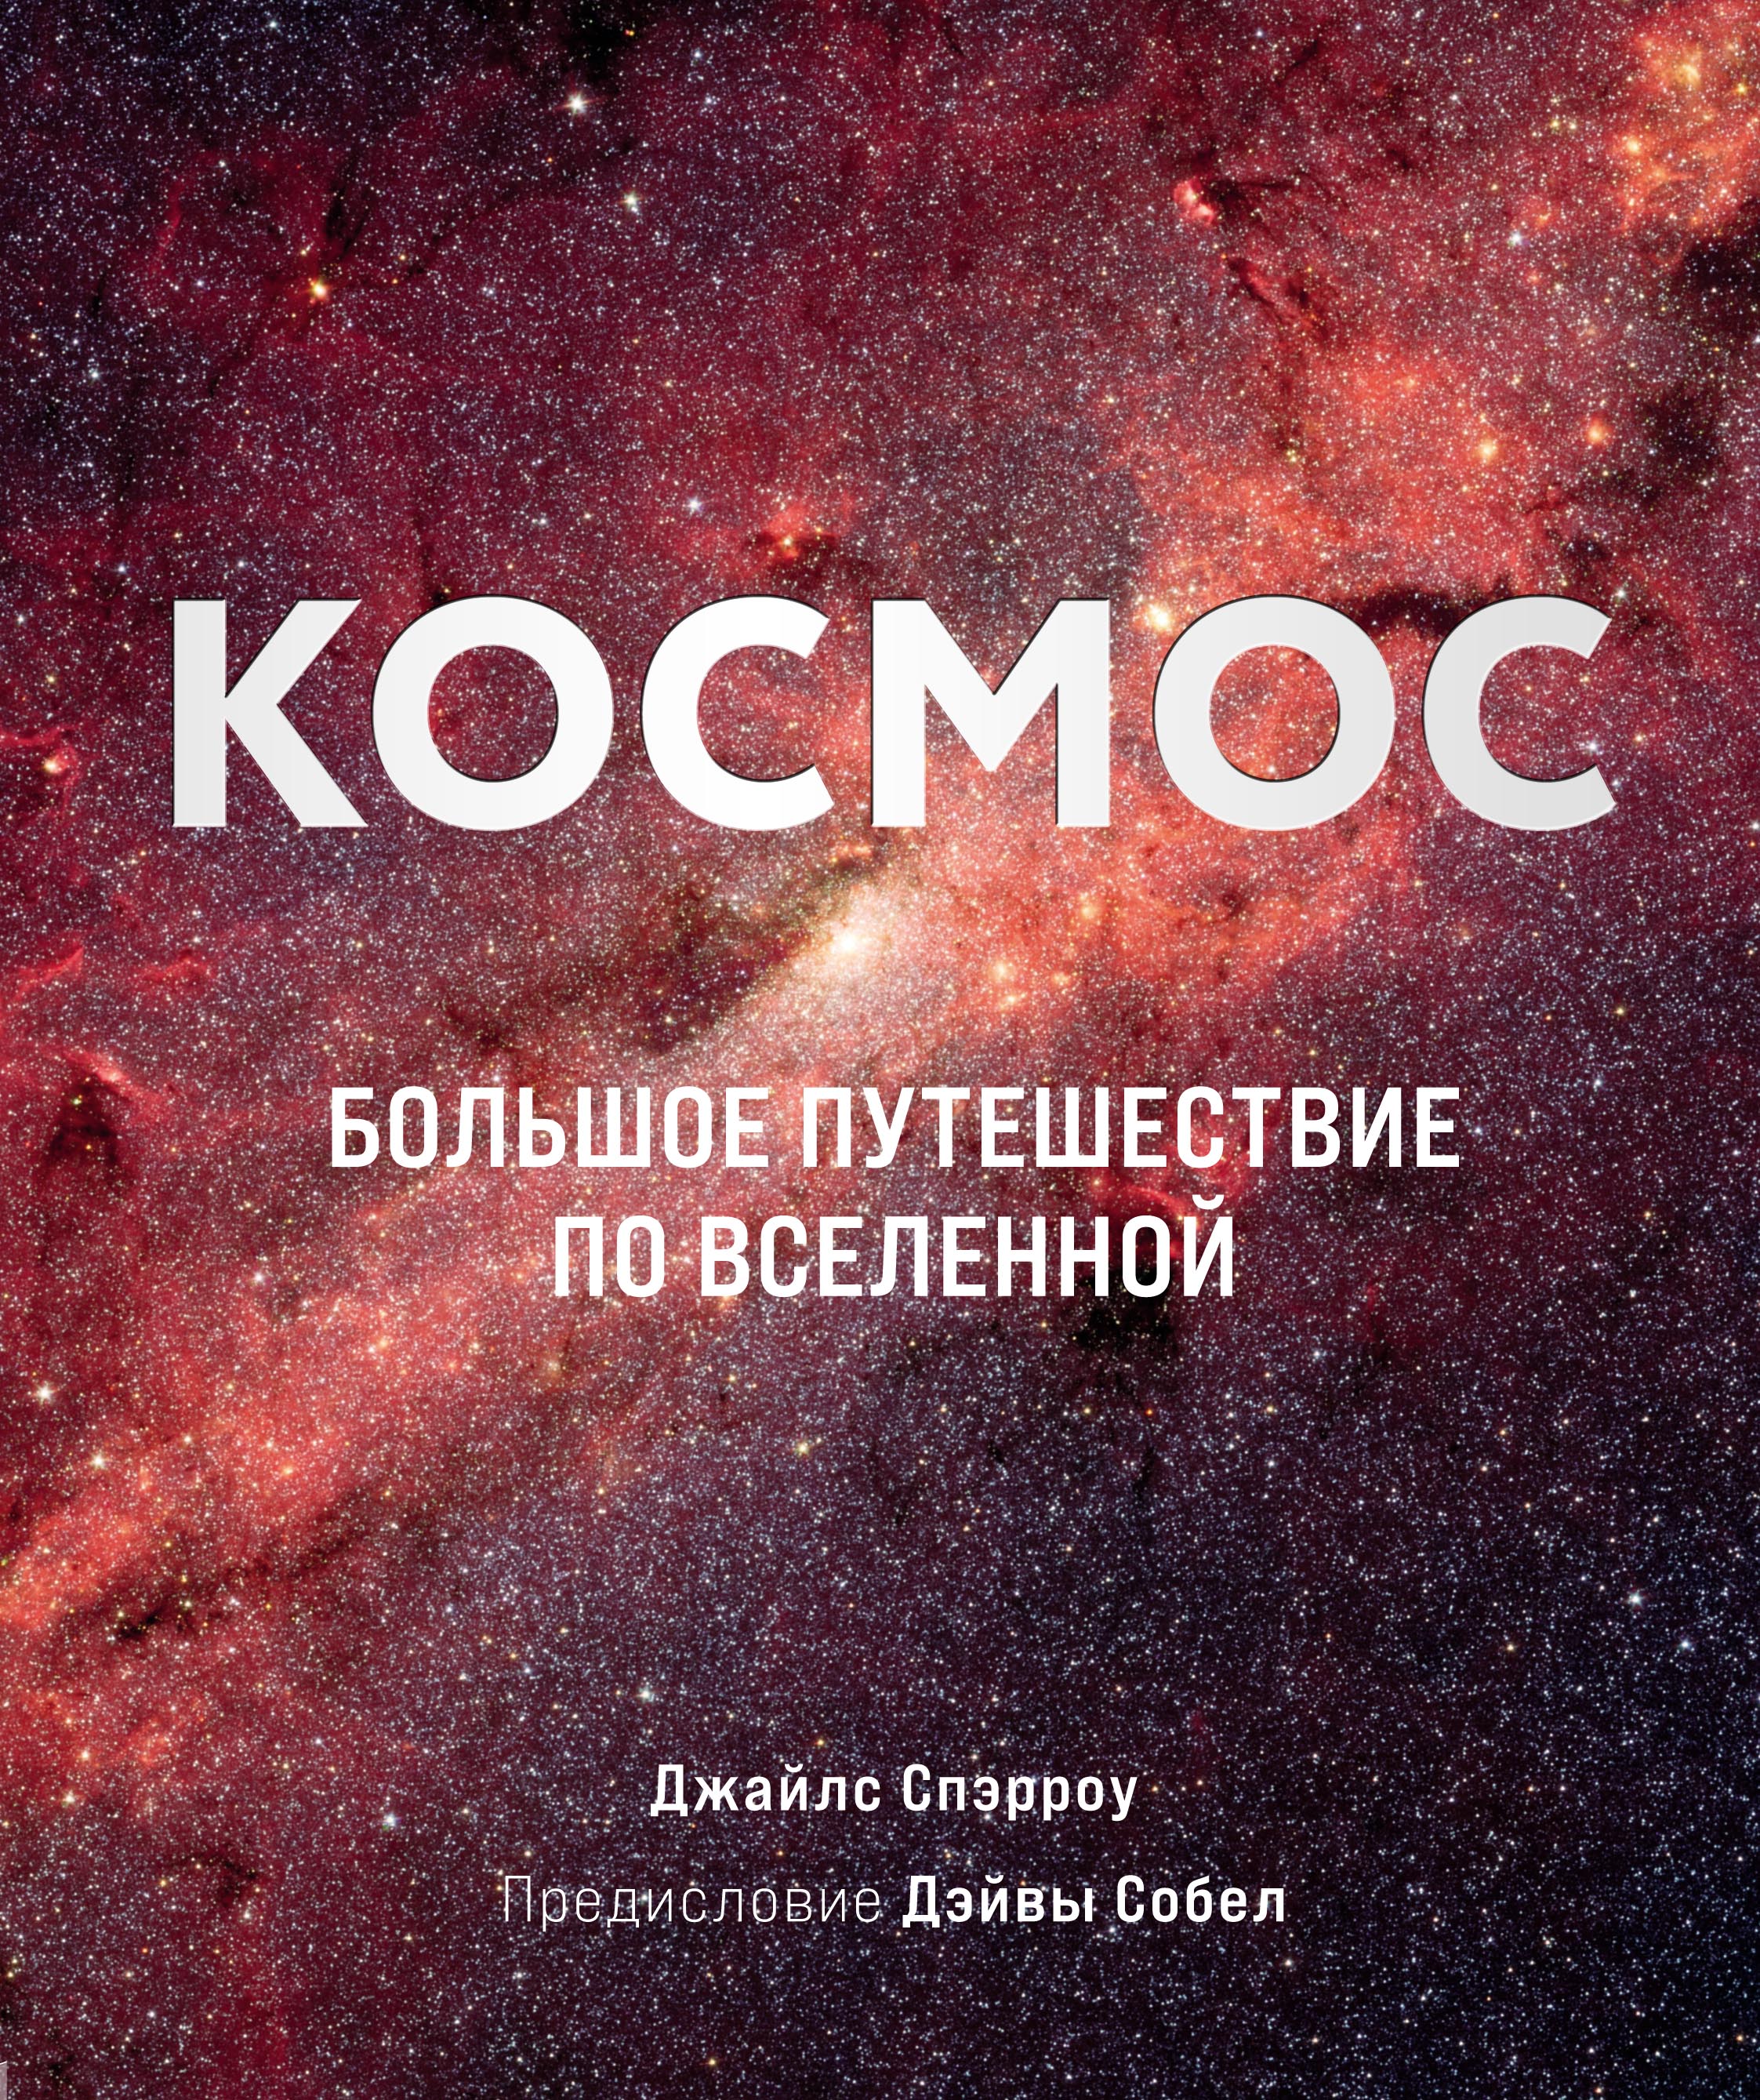 Десятилетия науки и технологий в России | Направления деятельности проекта